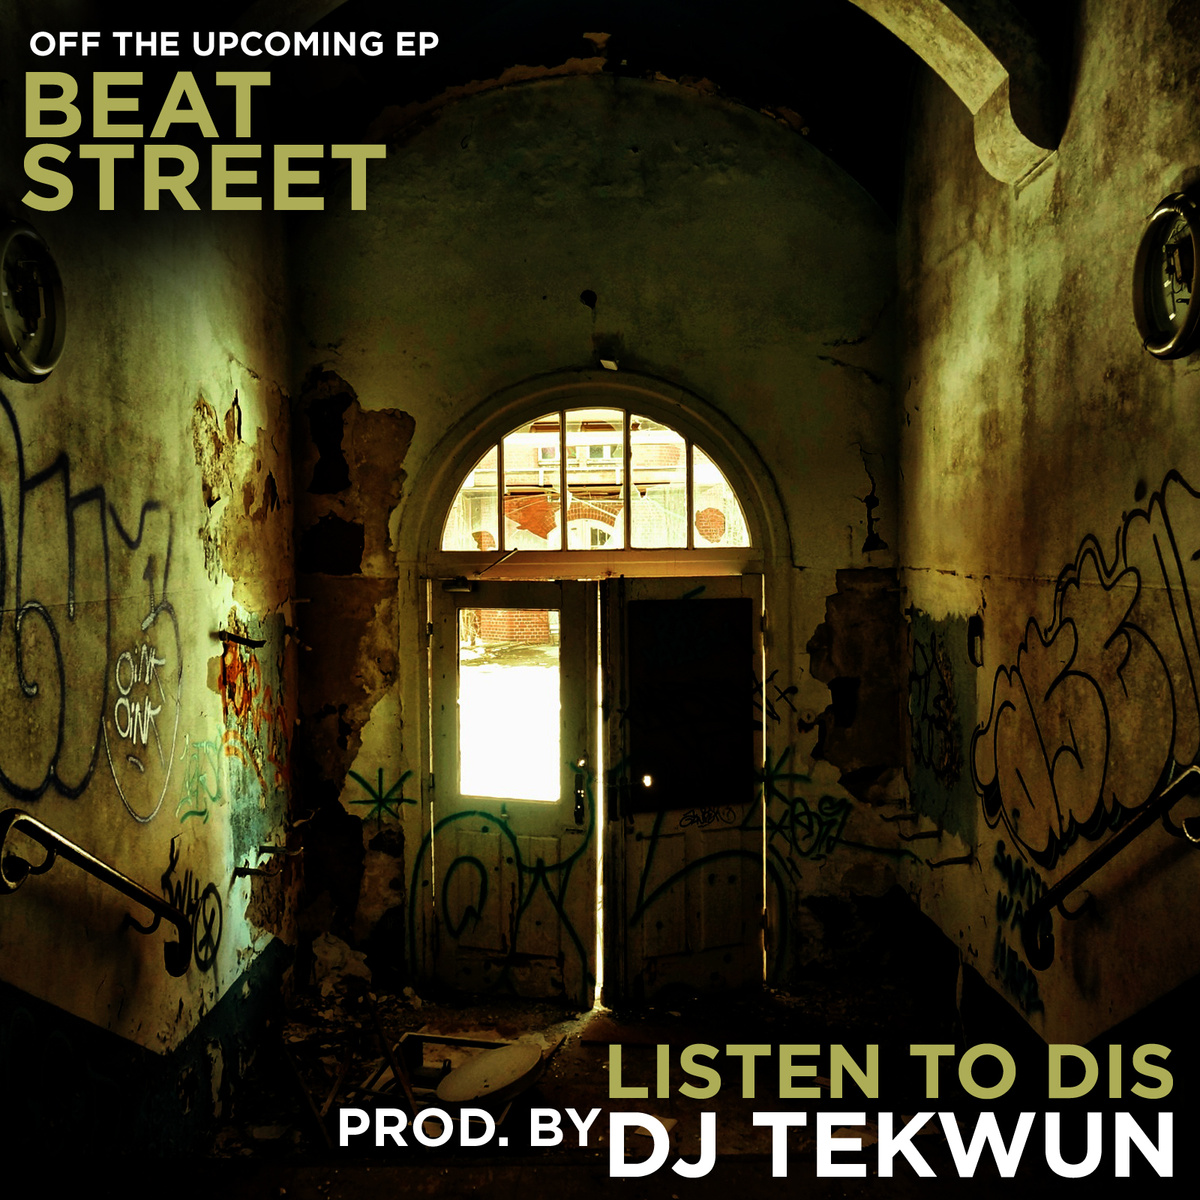 DJ Tekwun - "Listen To Dis"